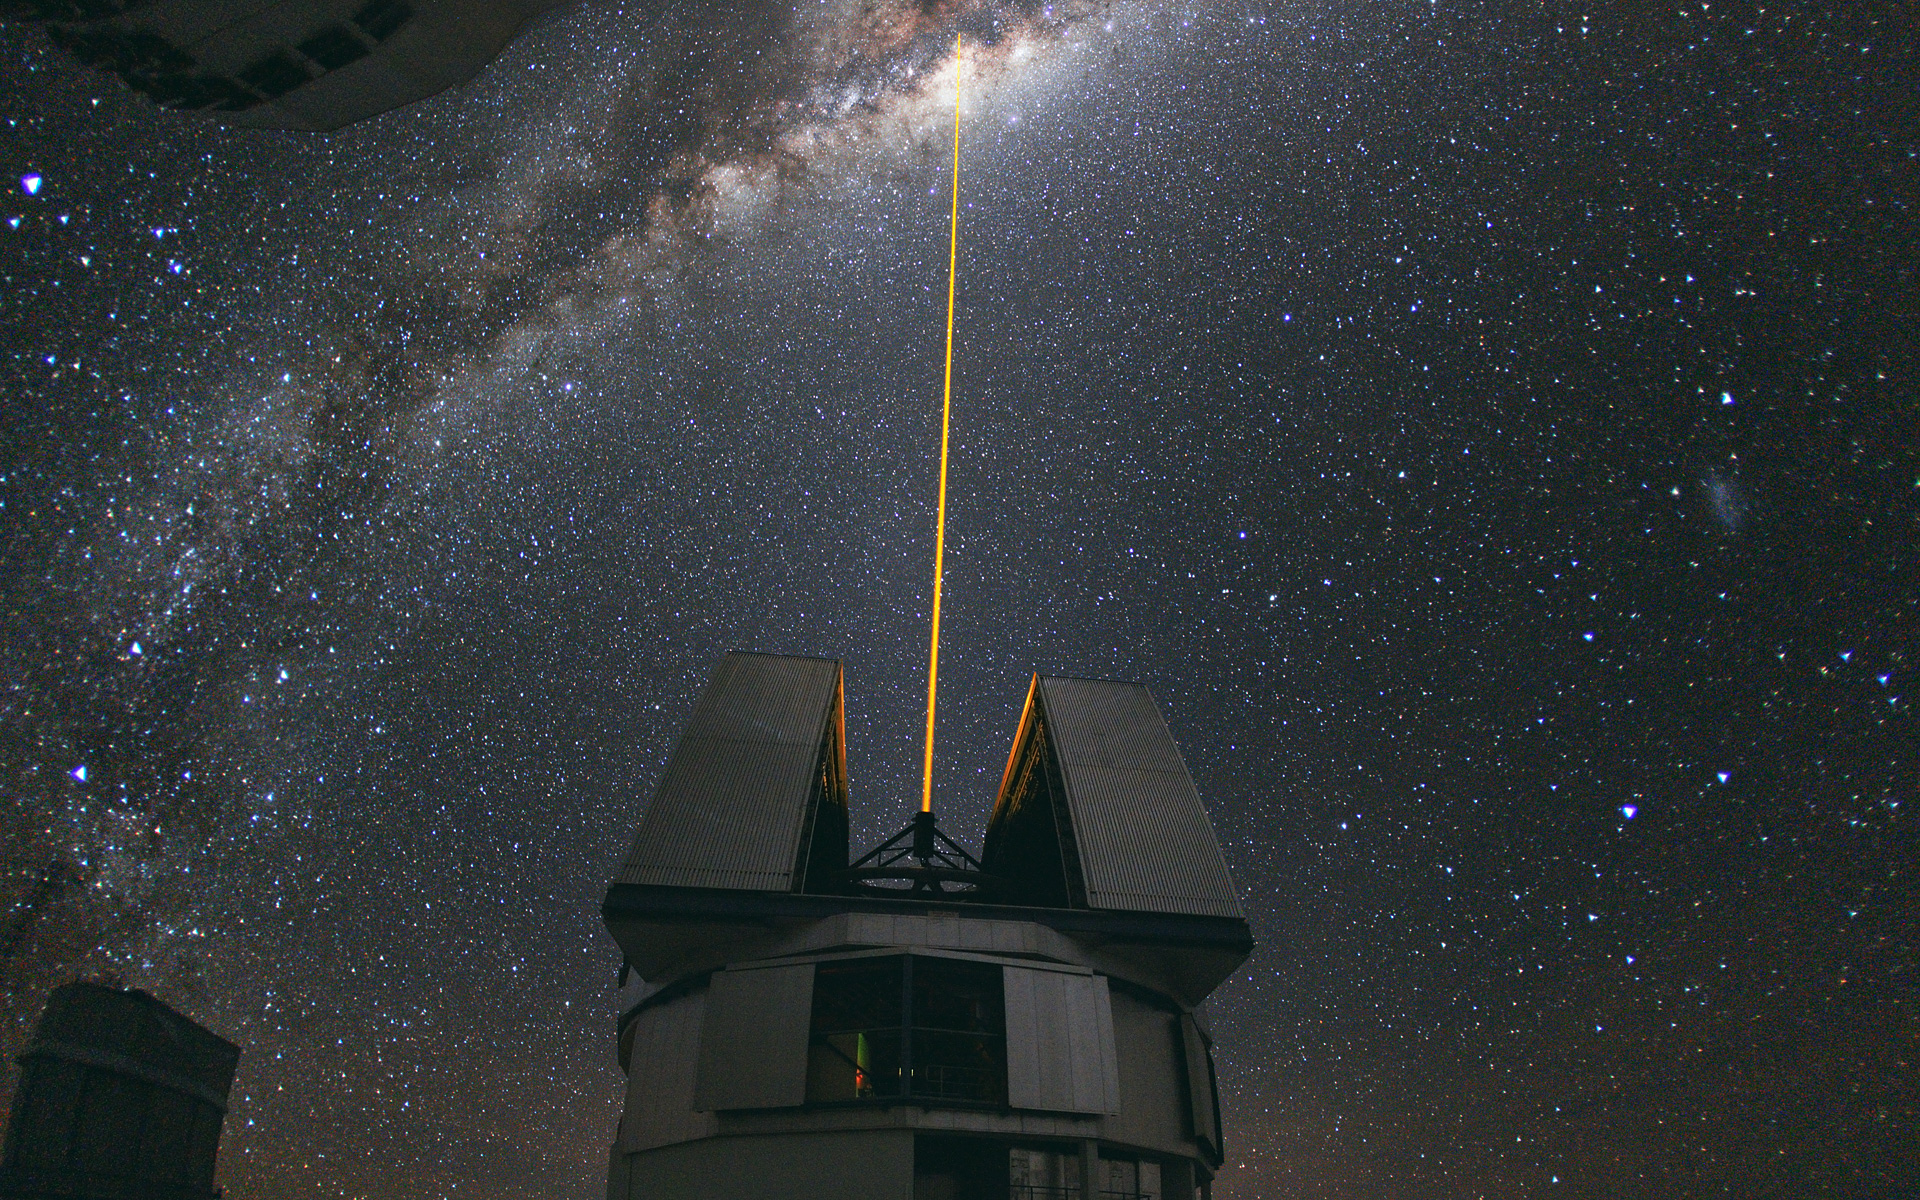 Au milieu d'août 2010, l'ambassadeur photo de l'ESO, Yuri Beletsky, a pris cette étonnante photo à l'observatoire ESO de Paranal. Un groupe d'astronomes observait le centre de la Voie lactée en utilisant l'installation d'étoile laser guide à Yepun, l'un des quatre grands téléscopes qui constituent le VLT. Le laser de Yepun traverse le majestueux ciel austral et crée une étoile artificielle à une altitude de 90 km, haut dans la mésosphère terrestre. Le LGS (Laser Guide Star) fait partie du système d'optique adaptative du VLT et est utilisé comme une référence pour corriger les effets flous de l'atmosphère sur les images. © ESO, Y. Beletsky